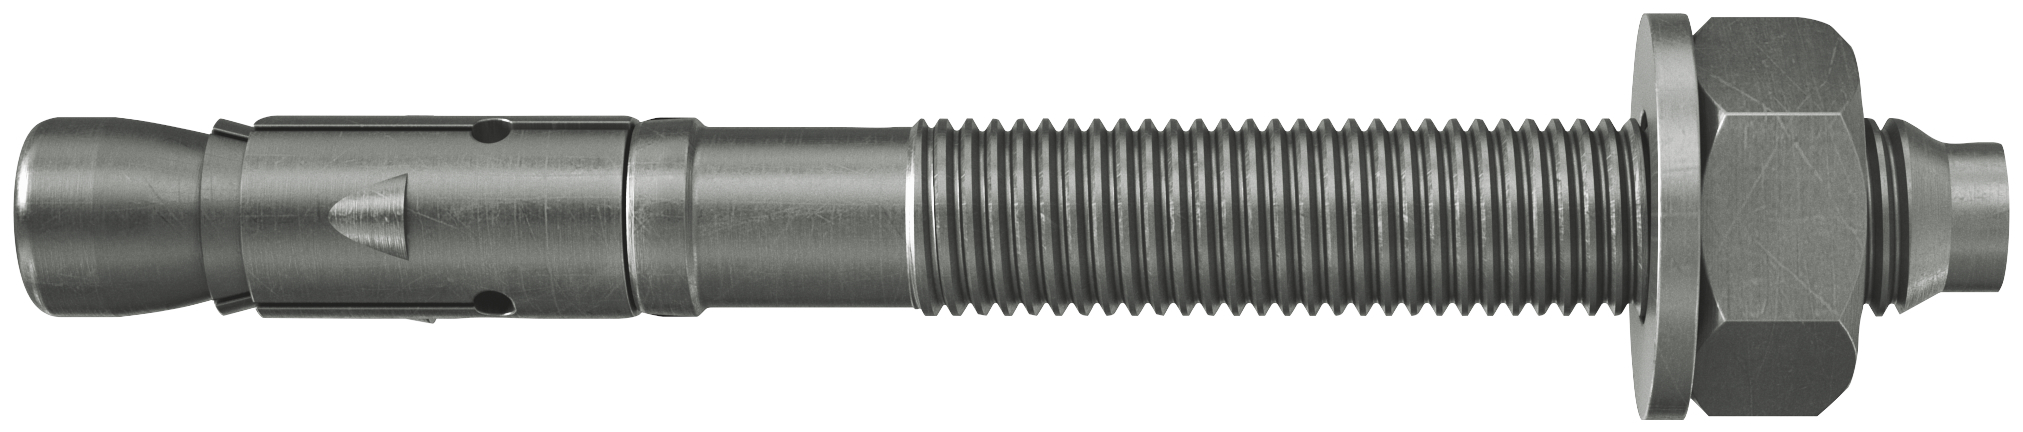 fischer Tassello acciaio FAZ II 16/100 A4 (10 Pz.) L'ancorante ad espansione ad alte prestazioni per carichi statici su calcestruzzo fessurato e per applicazioni sismiche. Versione in acciaio inossidabile con classe di resistenza alla corrosione CRC III..